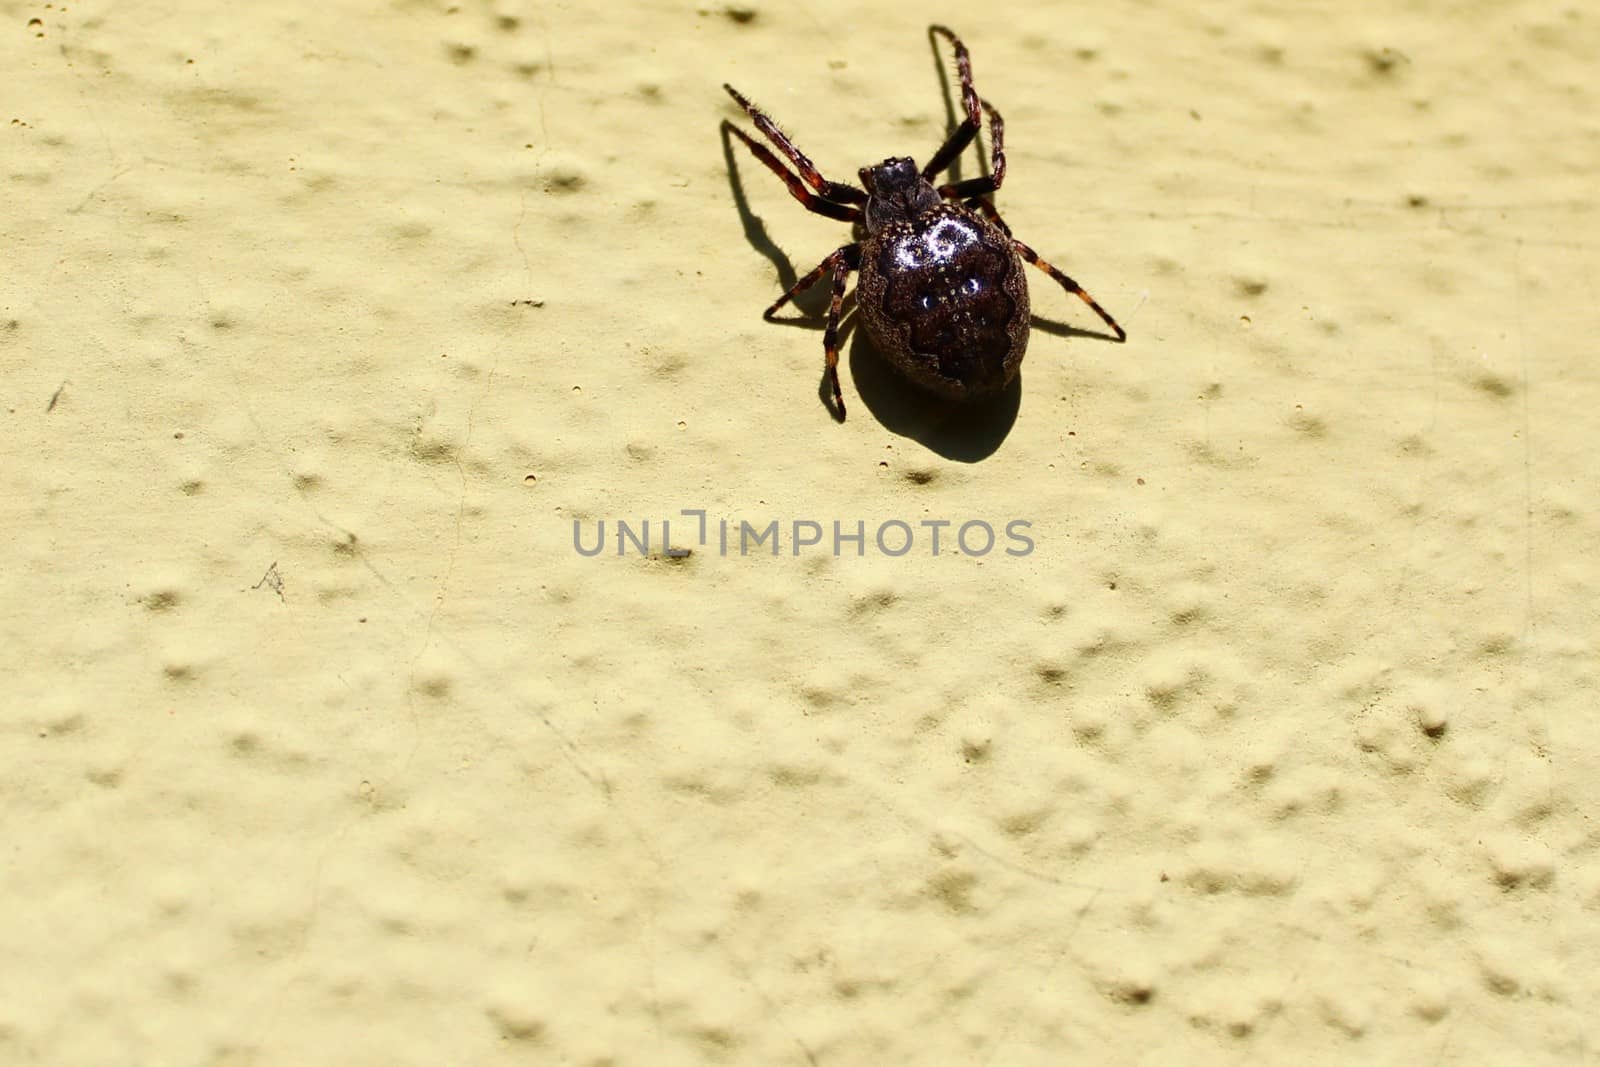 walnut orb-weaver spider on the wall by martina_unbehauen